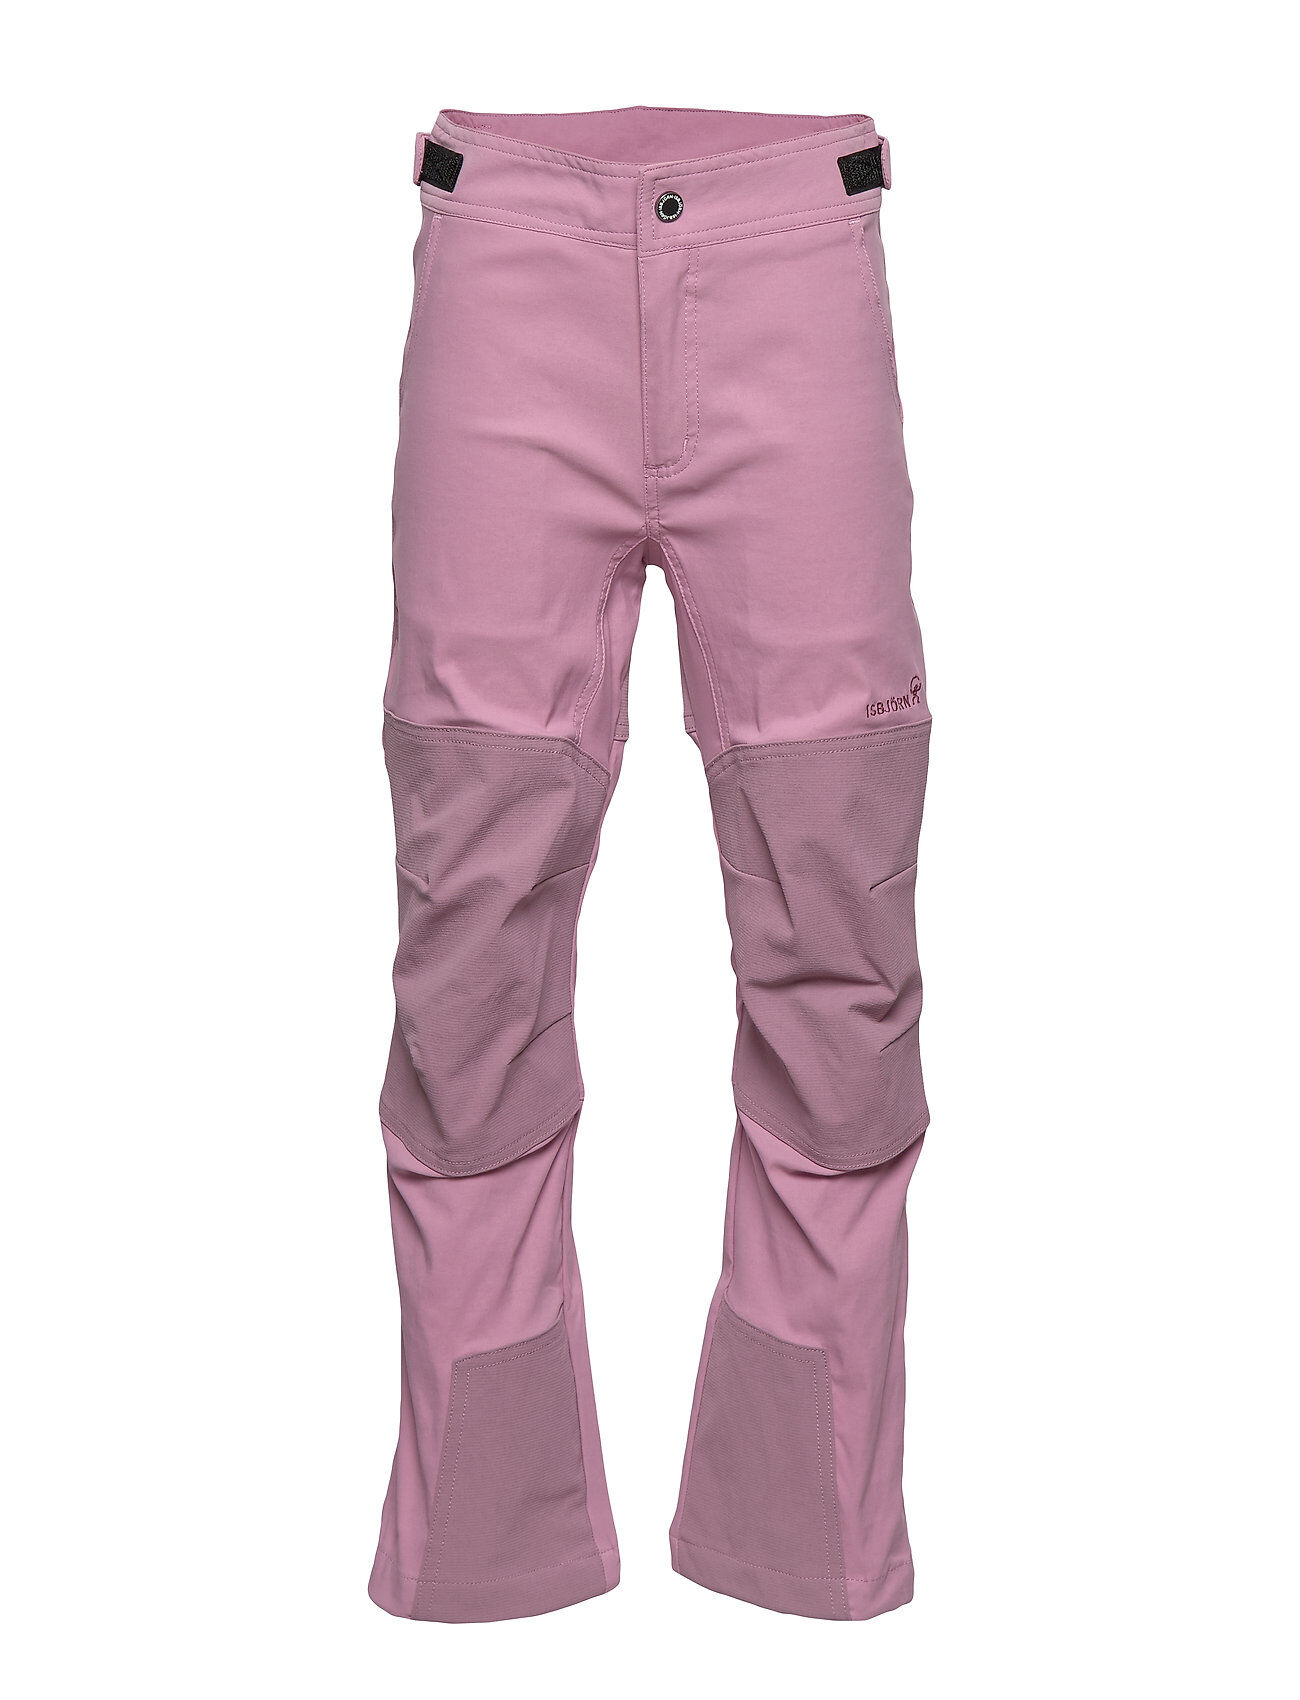 ISBJÖRN of Sweden Trapper Pant Ii Outerwear Softshells Softshell Trousers Rosa ISBJÖRN Of Sweden